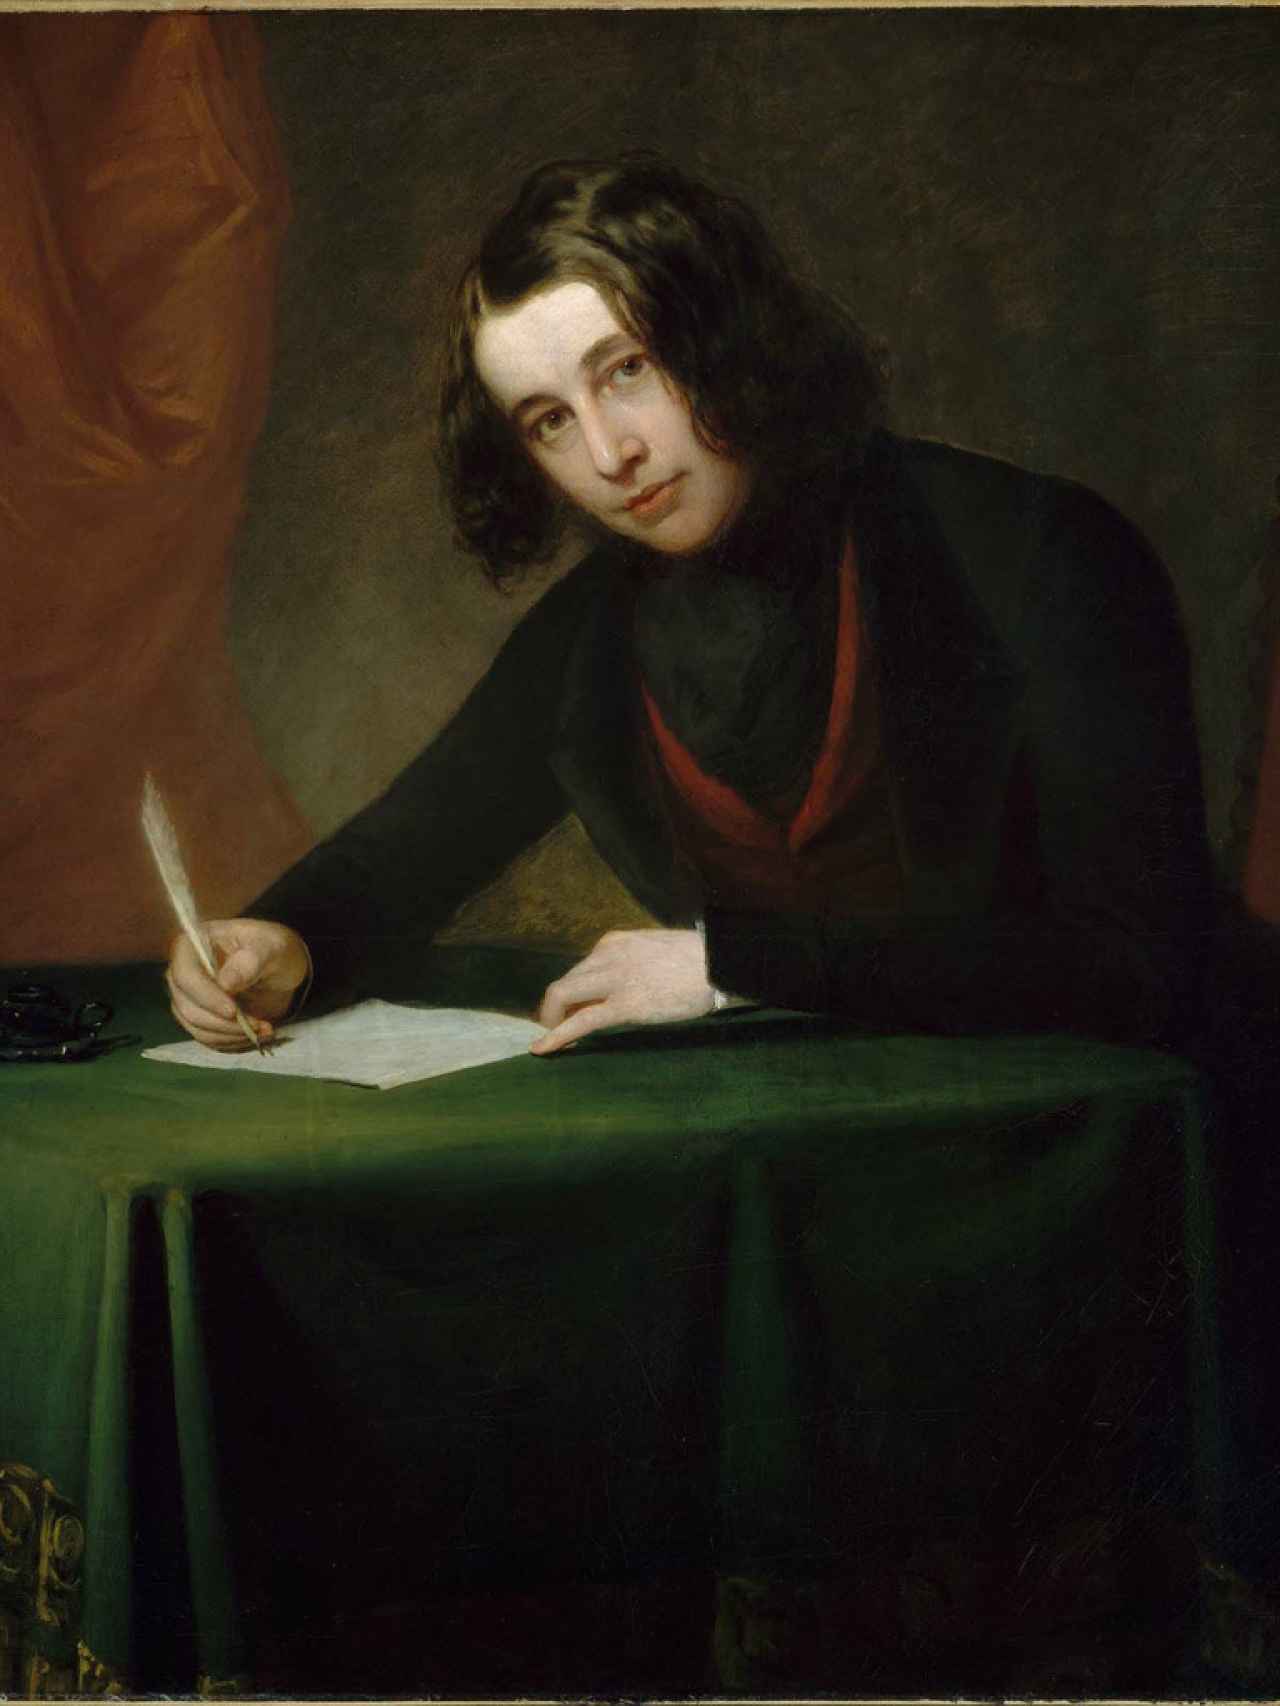 Retrato del joven Dickens, cuando ejercía como periodista